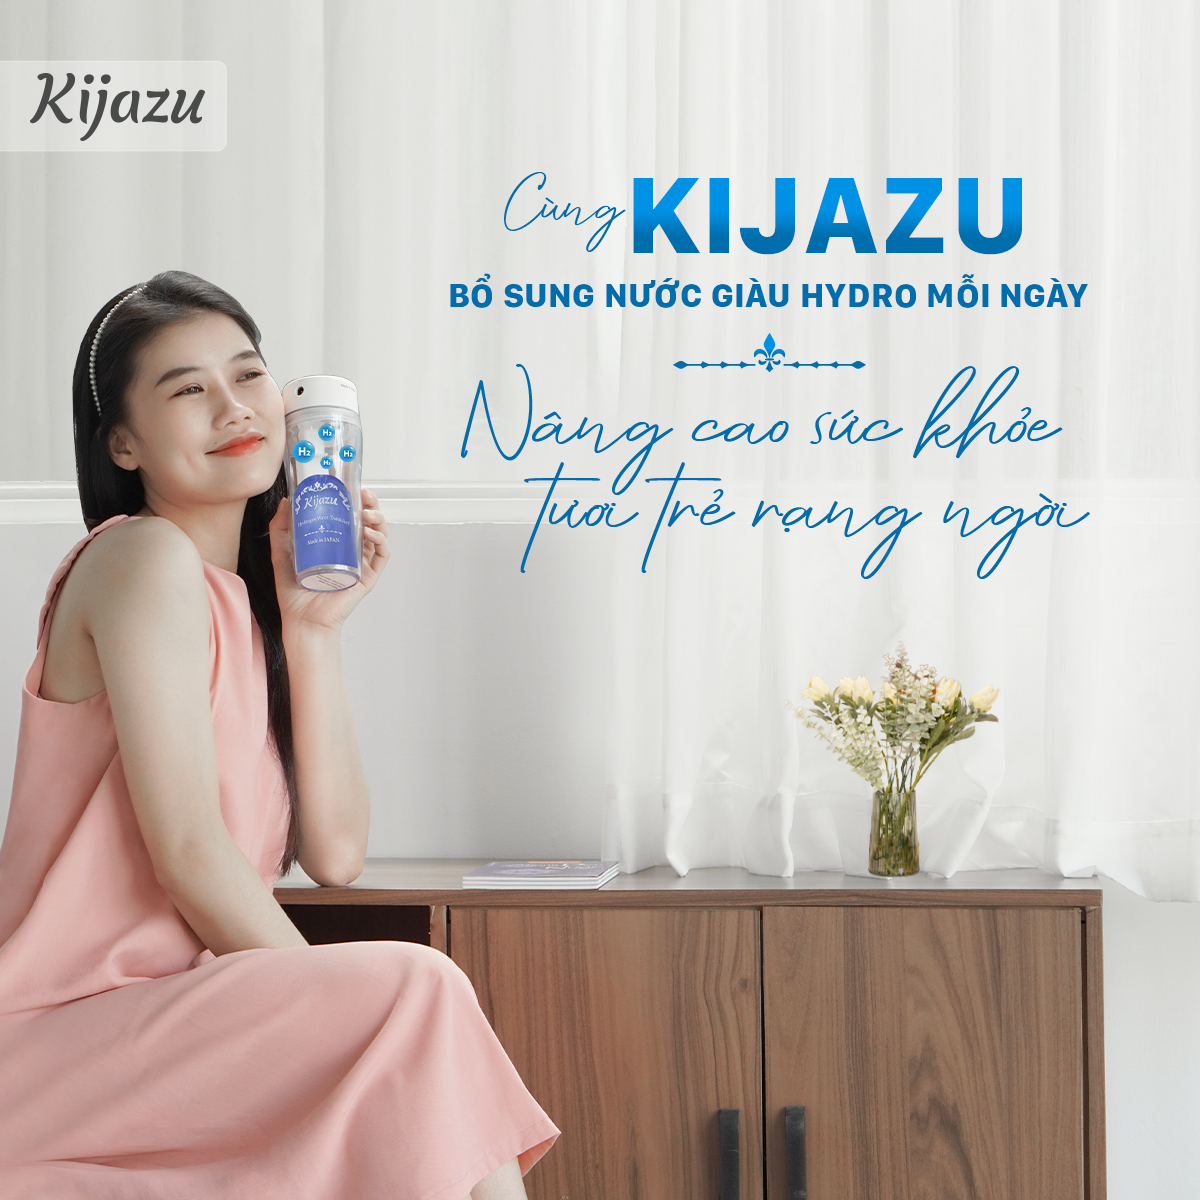 Kijazu - “Bí quyết” sống khỏe, sống đẹp hiệu quả, tiện lợi được nhiều người lựa chọn